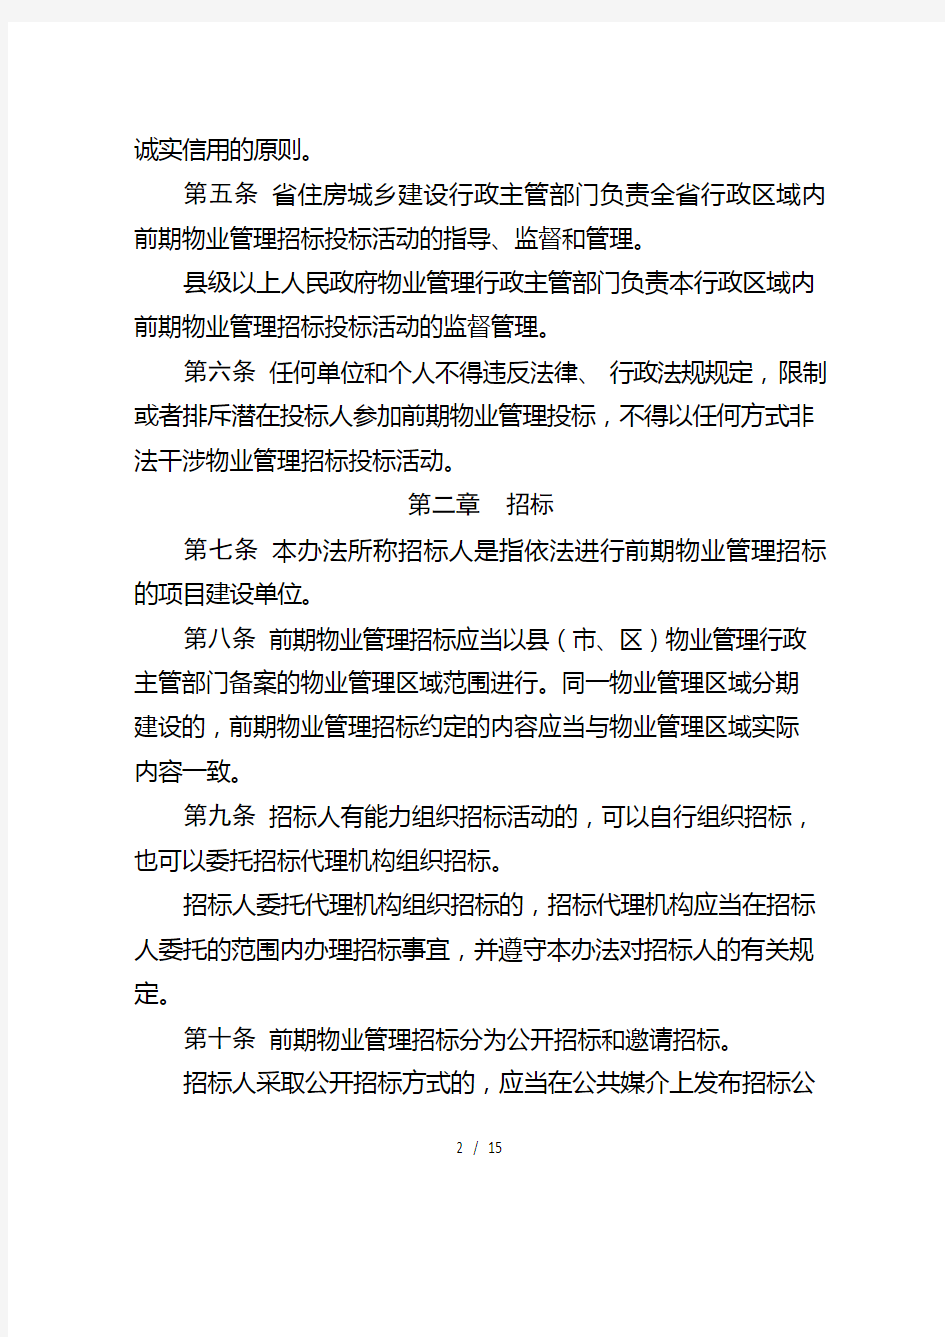 河南省前期物业管理招标投标管理暂行办法